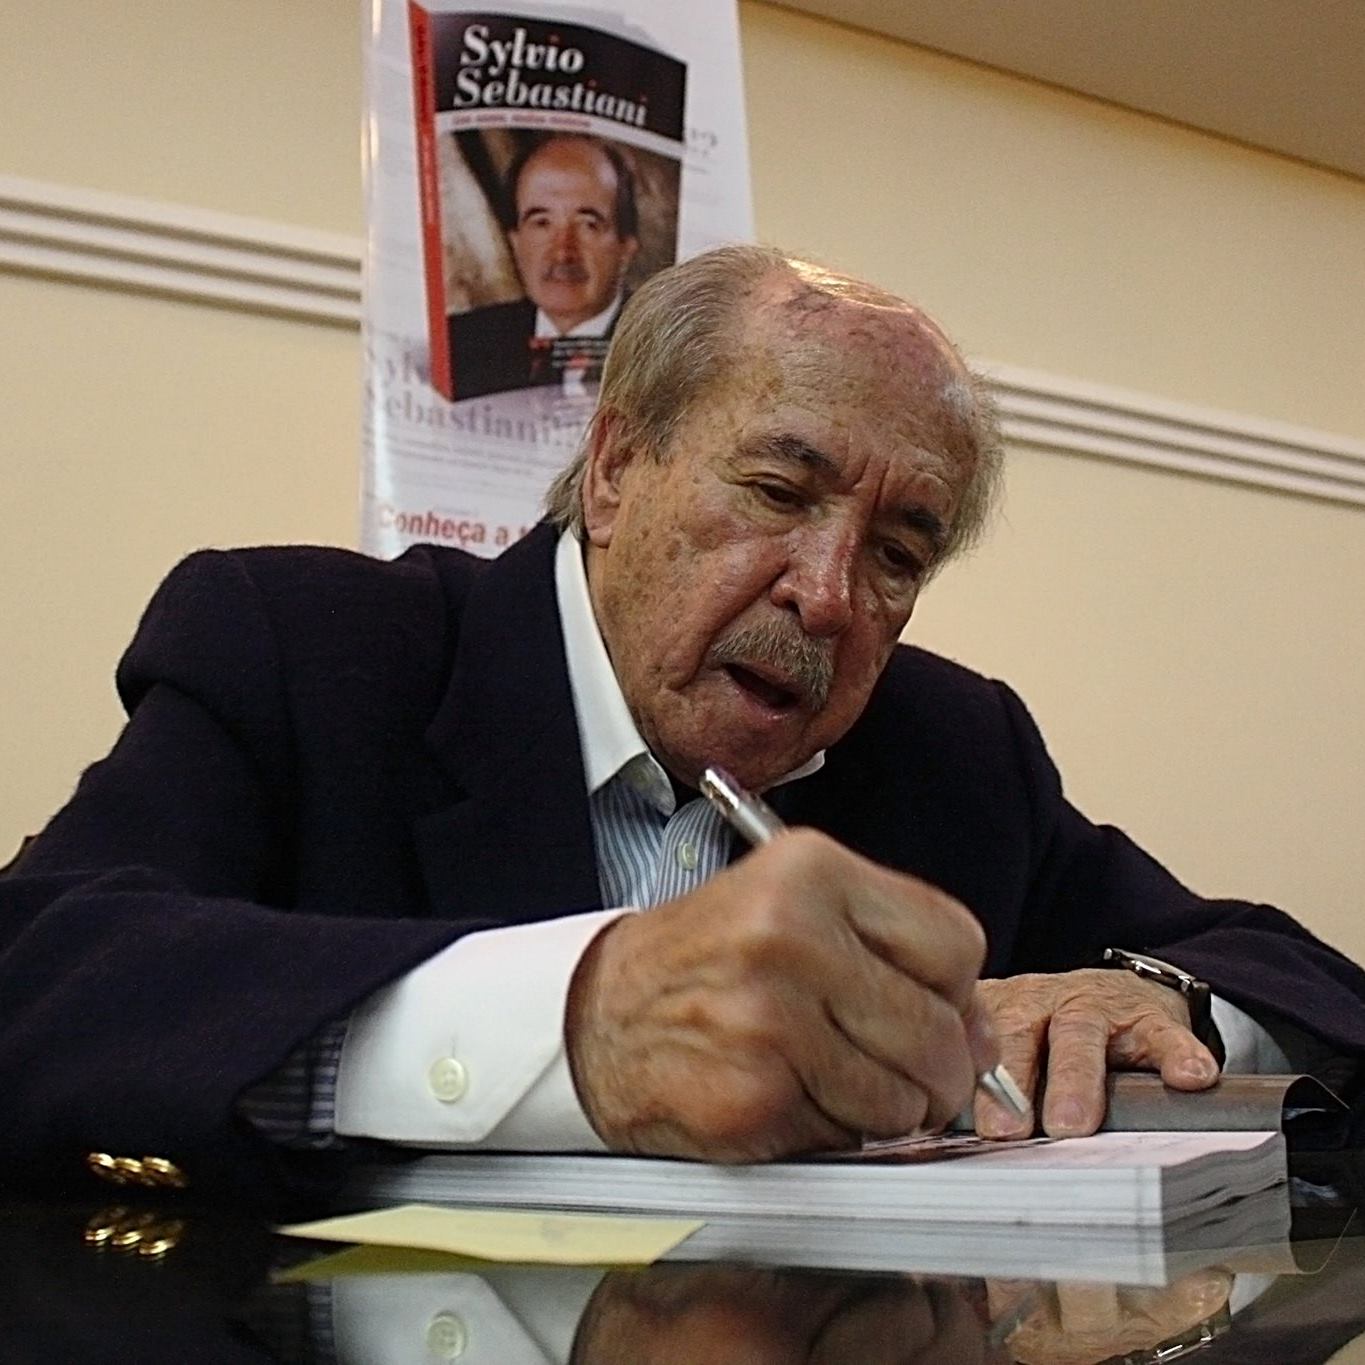 Jornalista Sylvio Sebastiani morre aos 92 anos